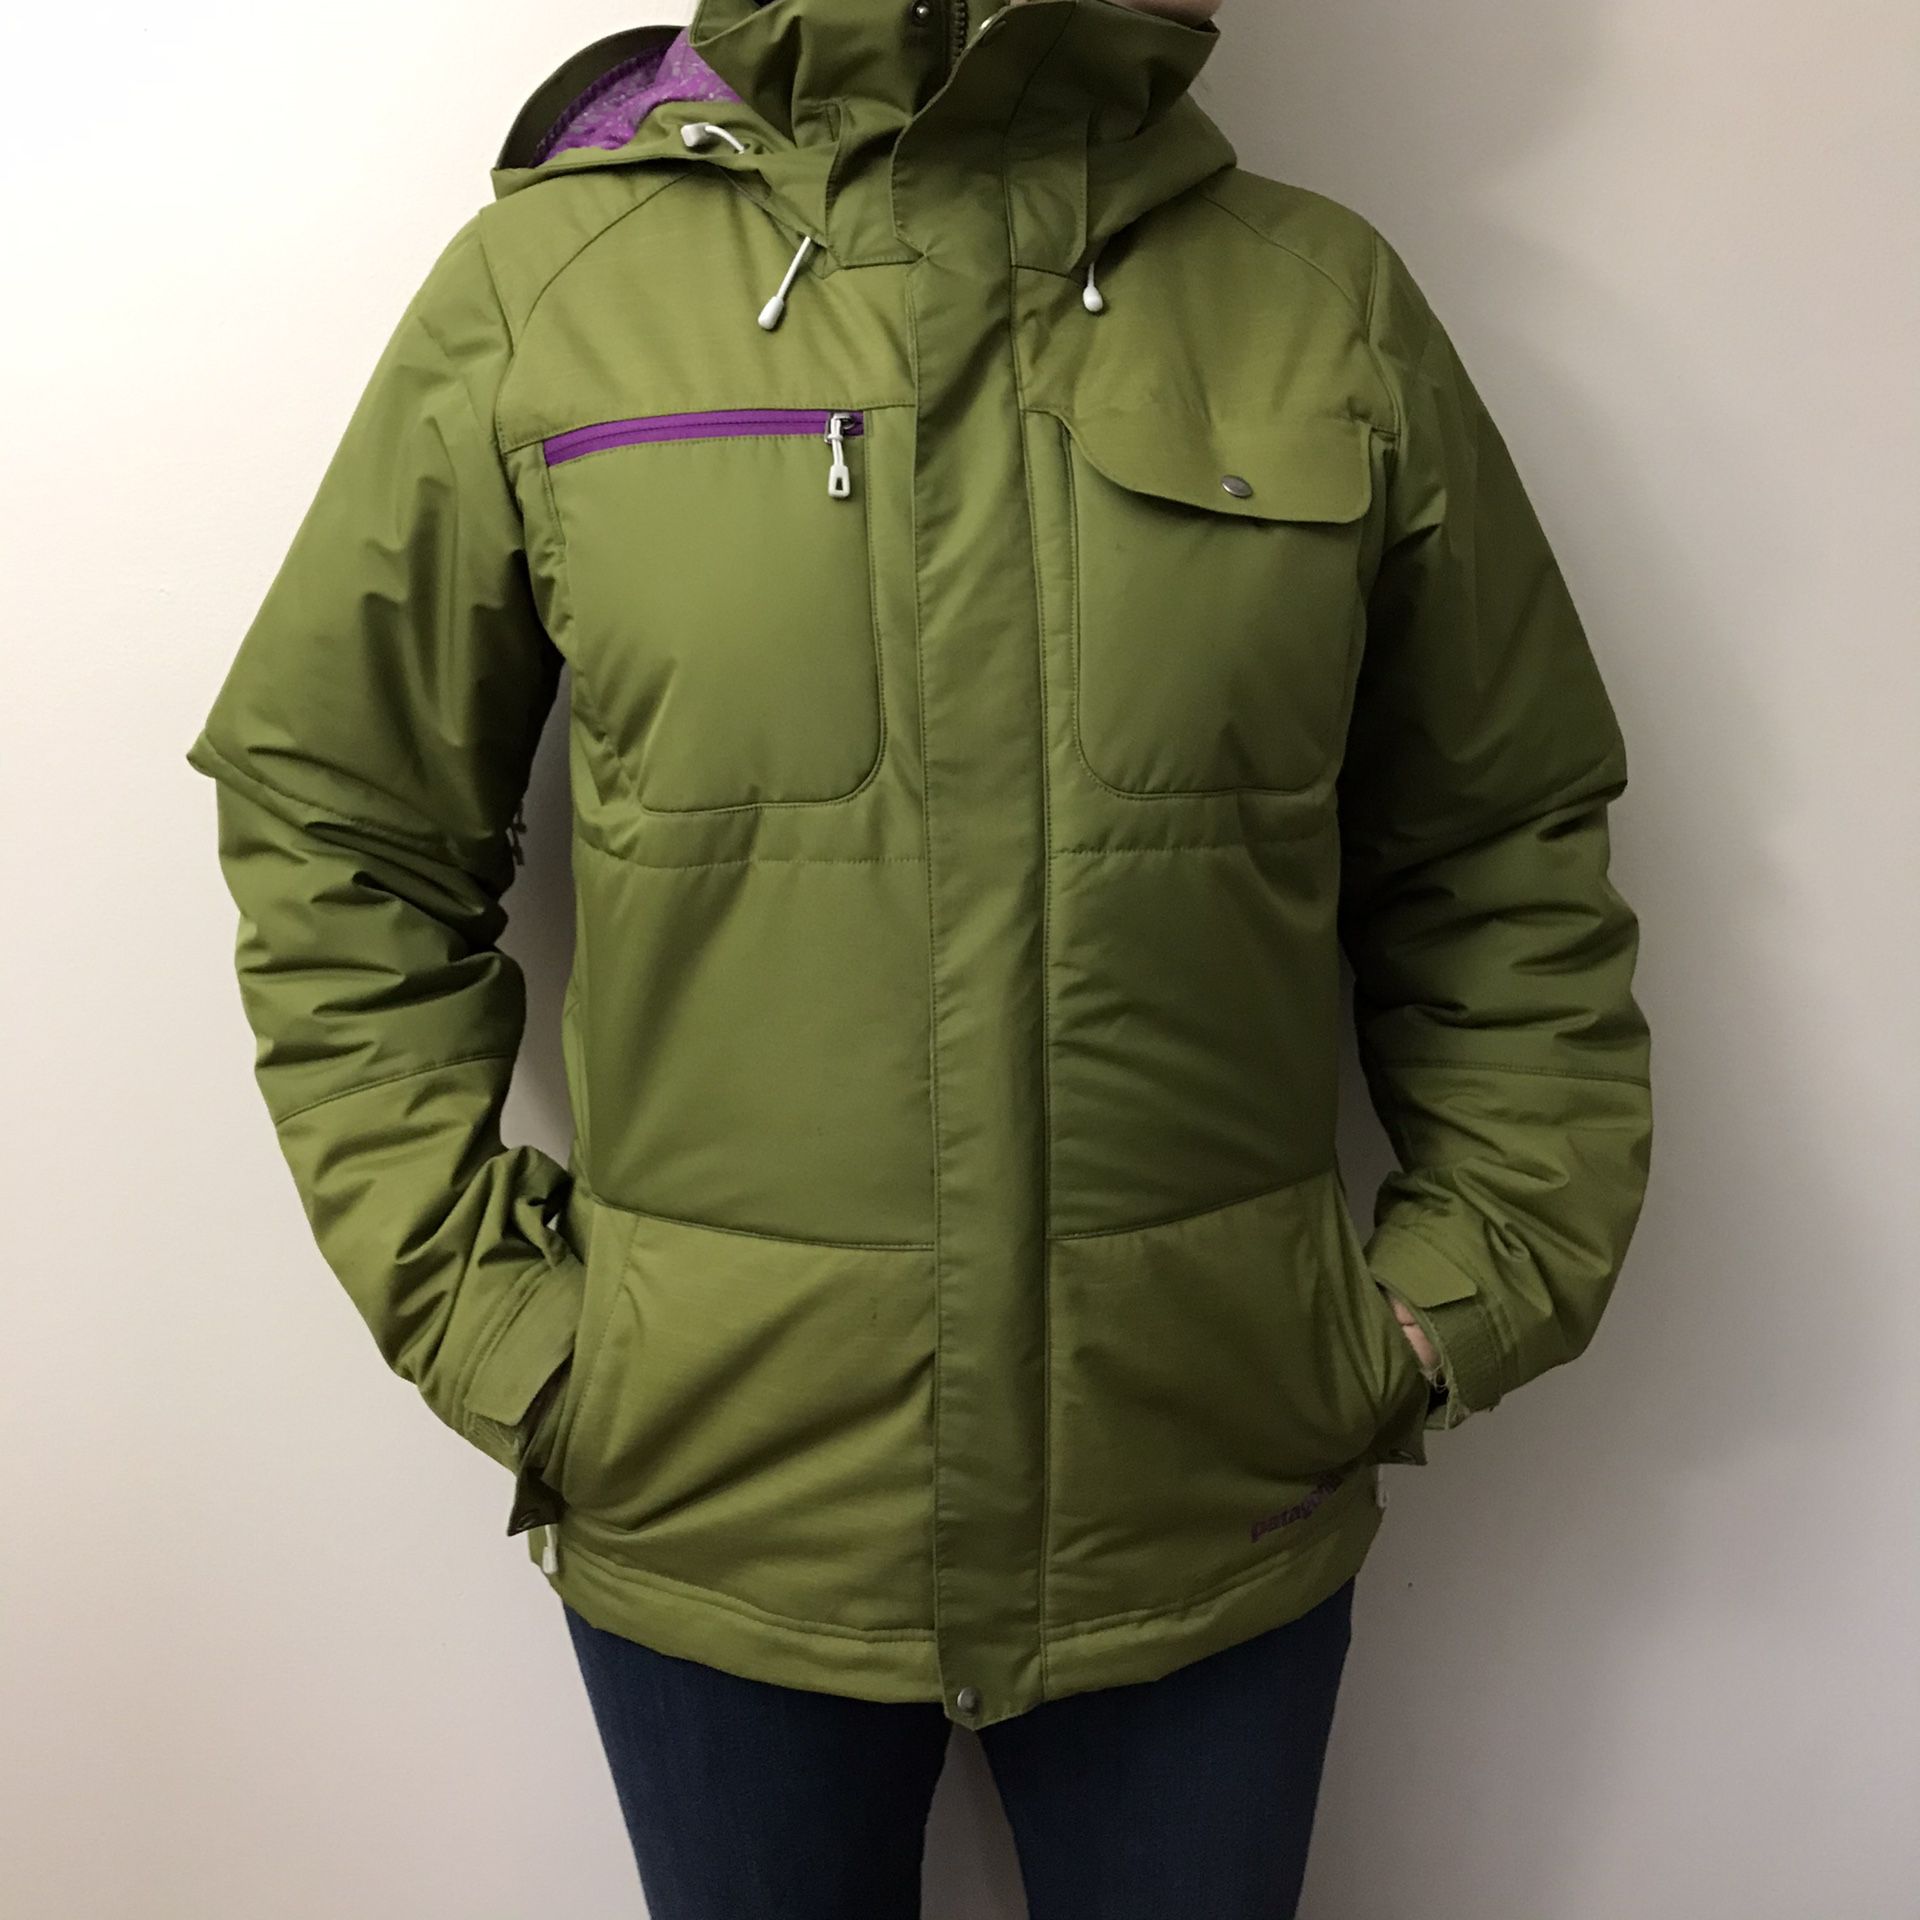 Women’s Patagonia winter jacket